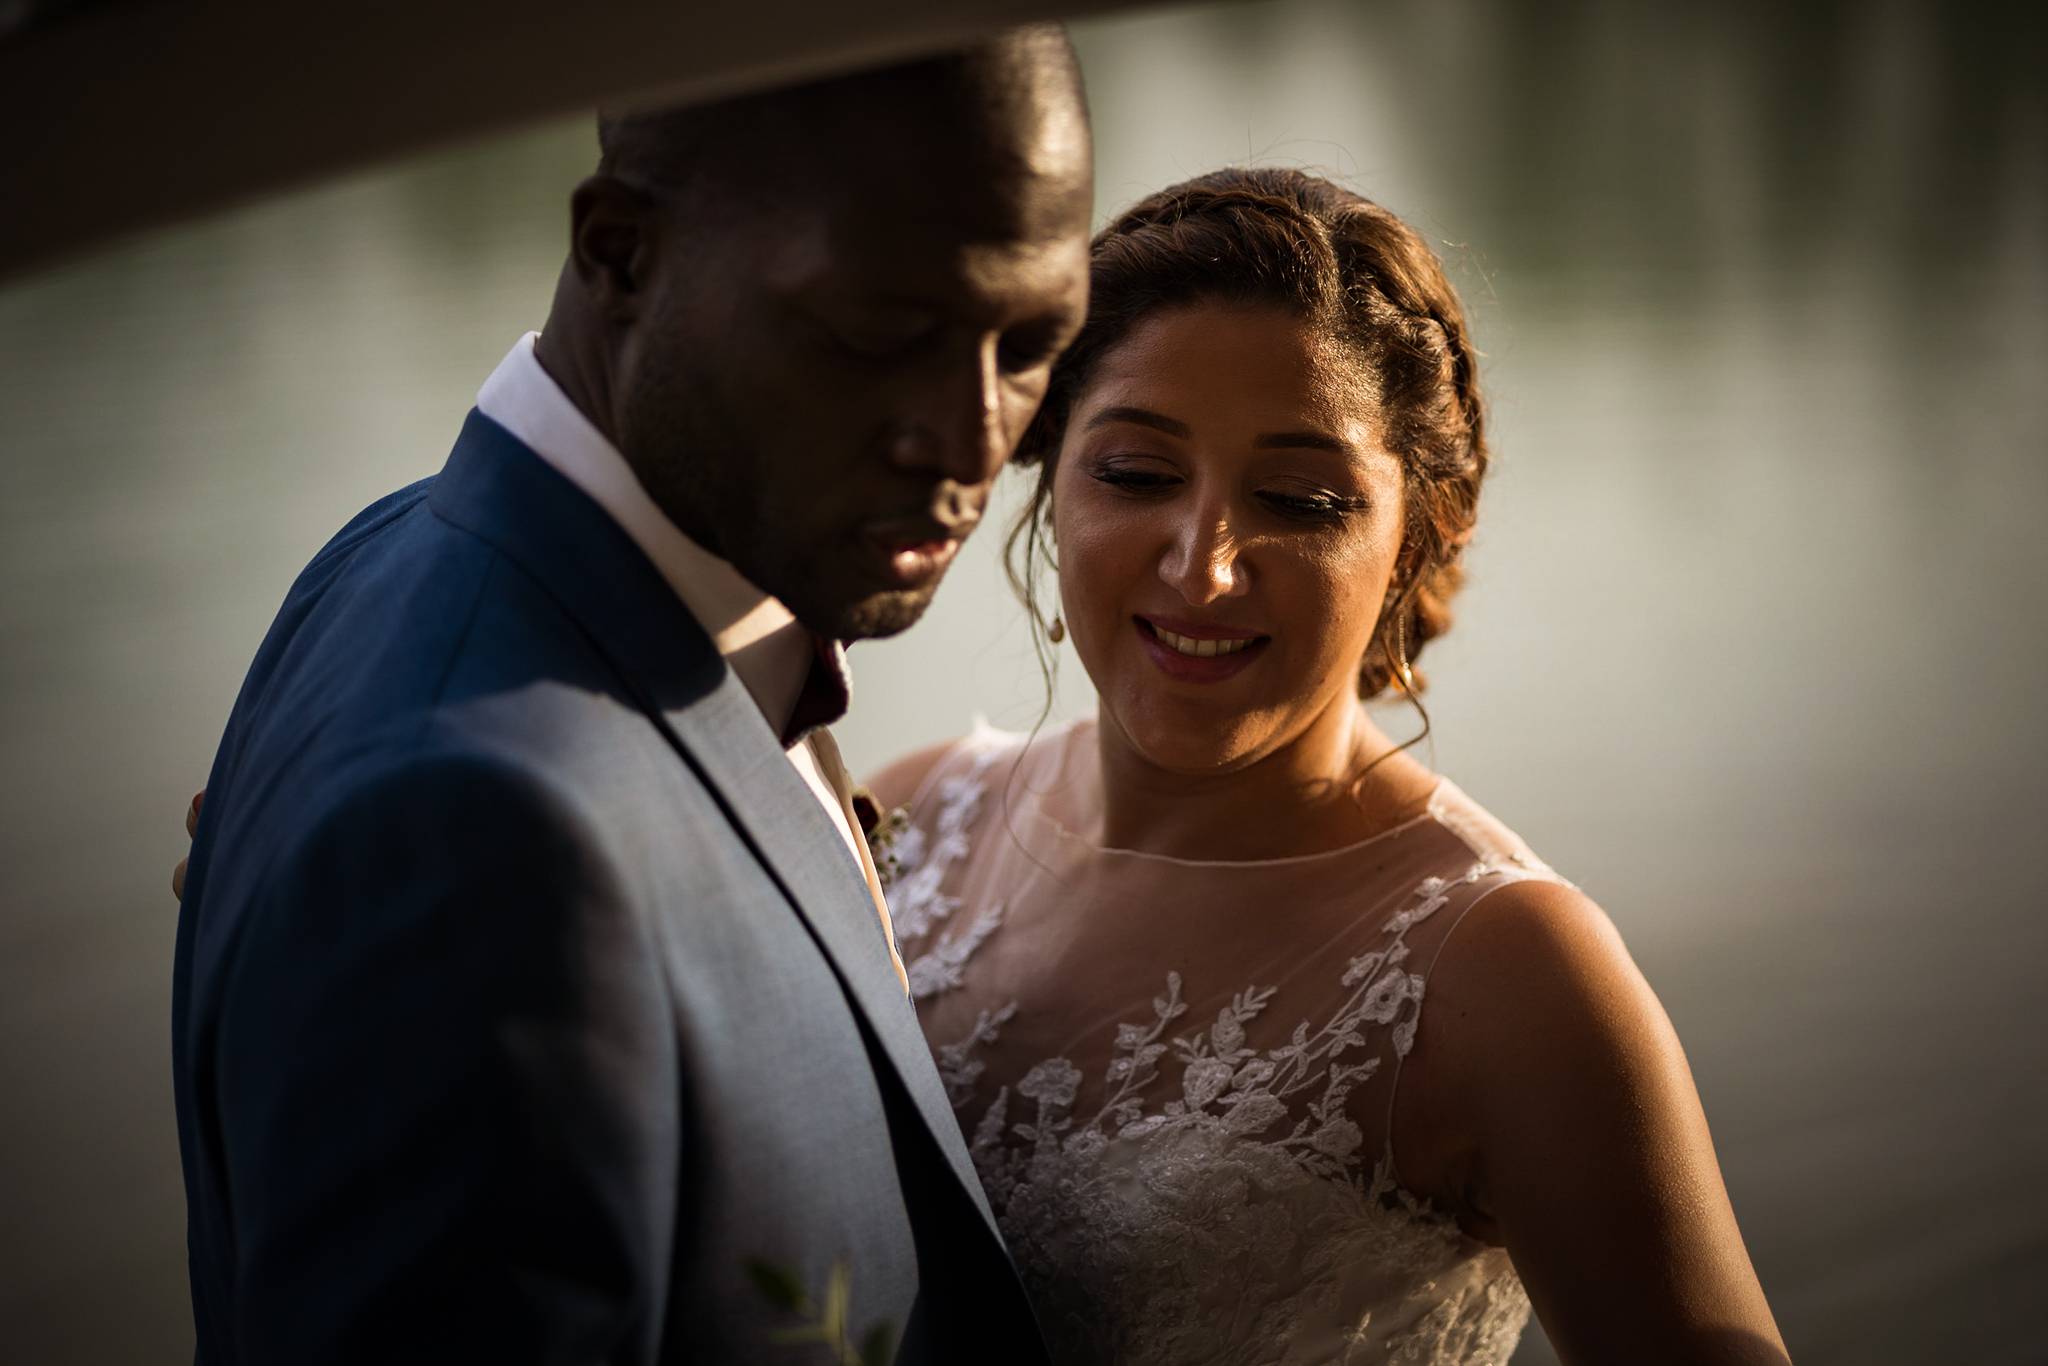 Un teaser du mariage de Kenza et Donald, entre Centrafrique et Maroc. Préparatifs et photos au Chateau du Tertre, réception au Domaine de Cordet 